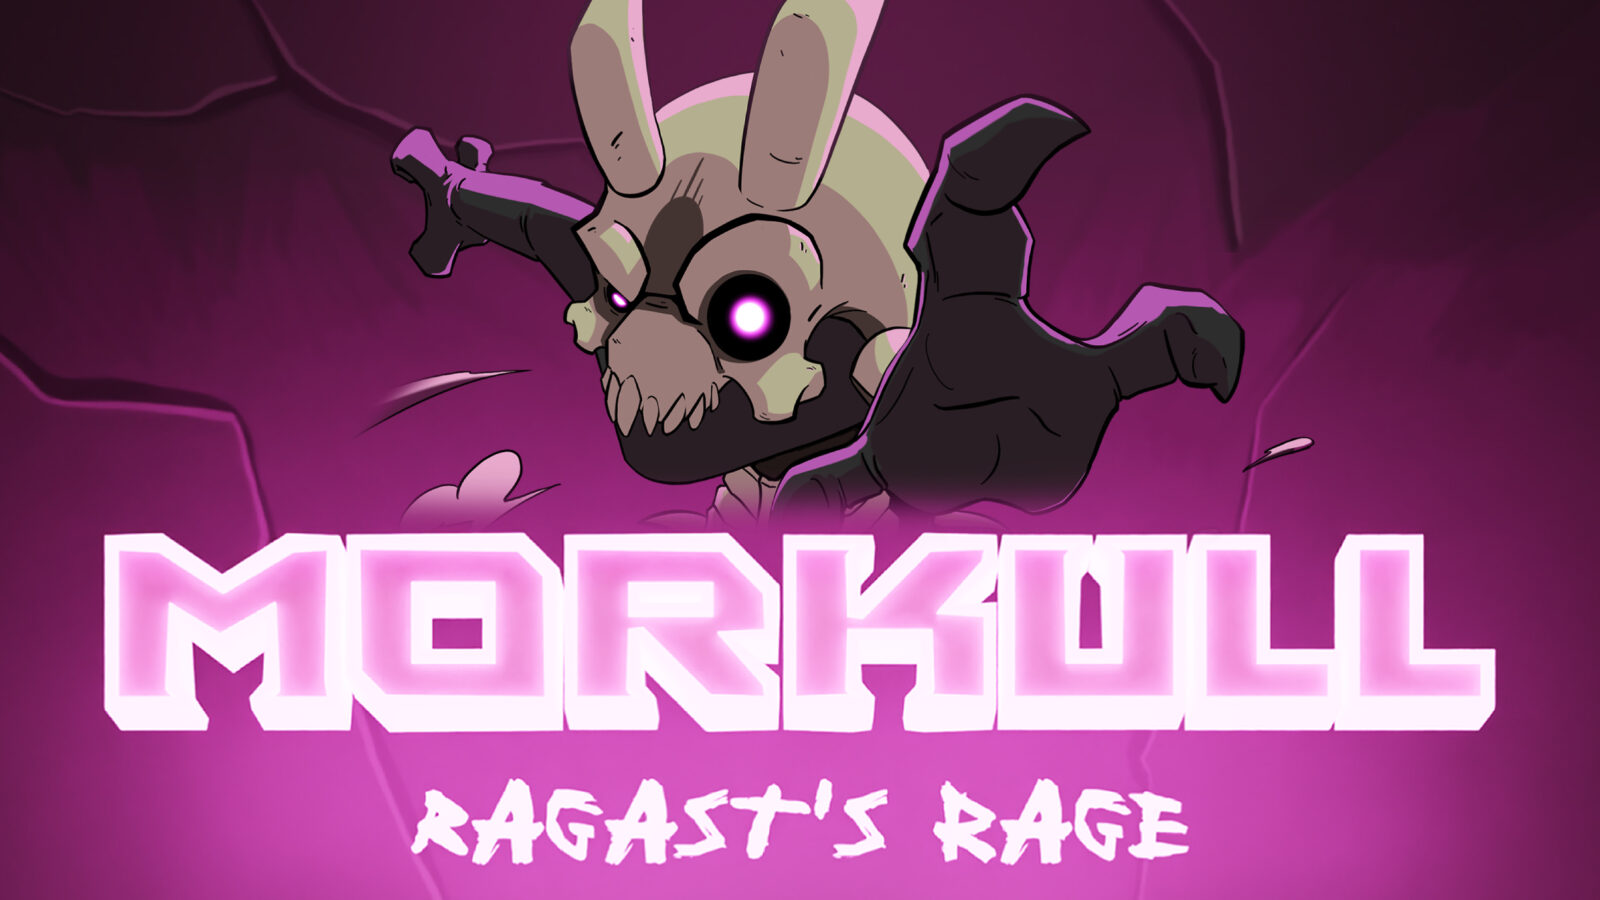 SelectaPlay anuncia parceria com Astrolabe Games e divulga novo trailer para Morkull Ragast's Rage